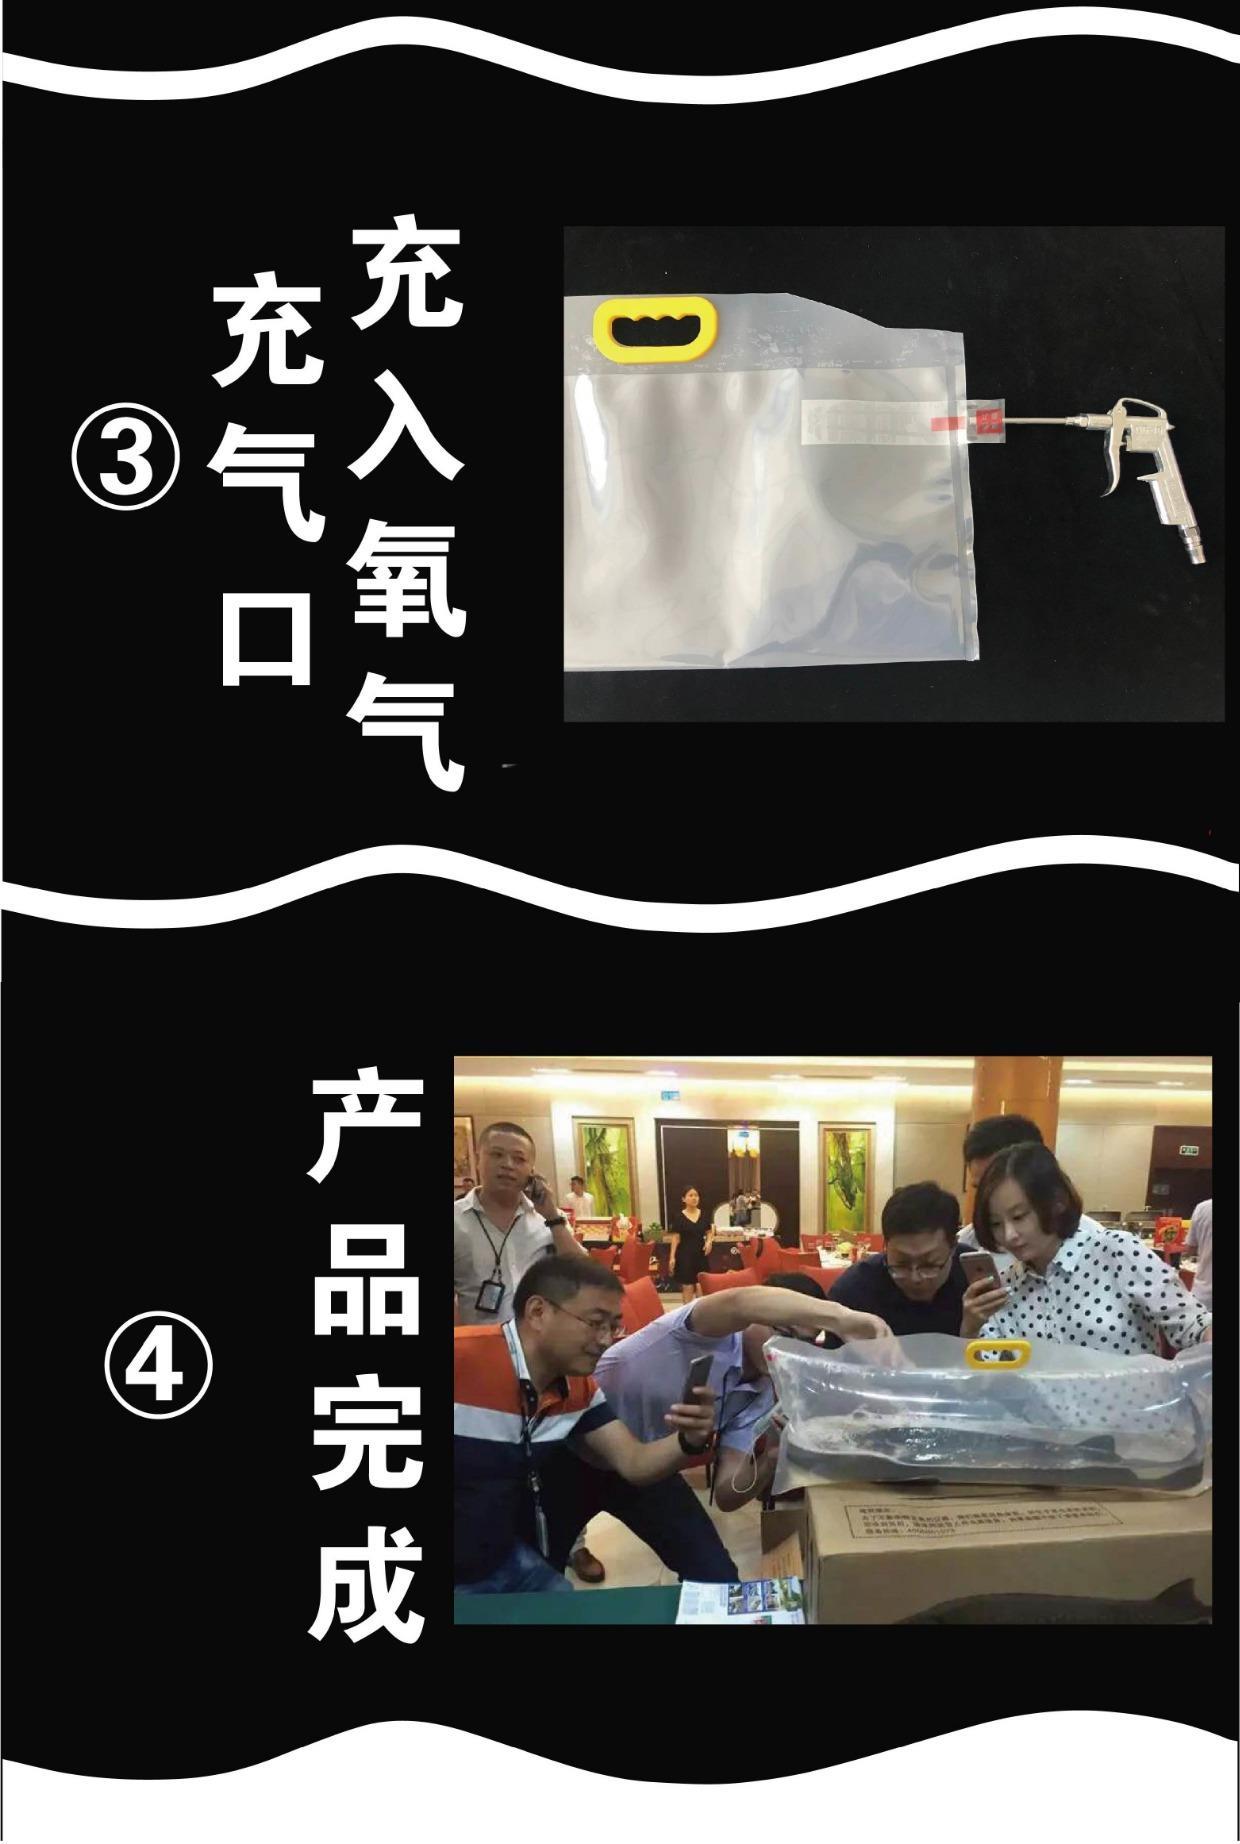 氧气袋的使用方法图解图片